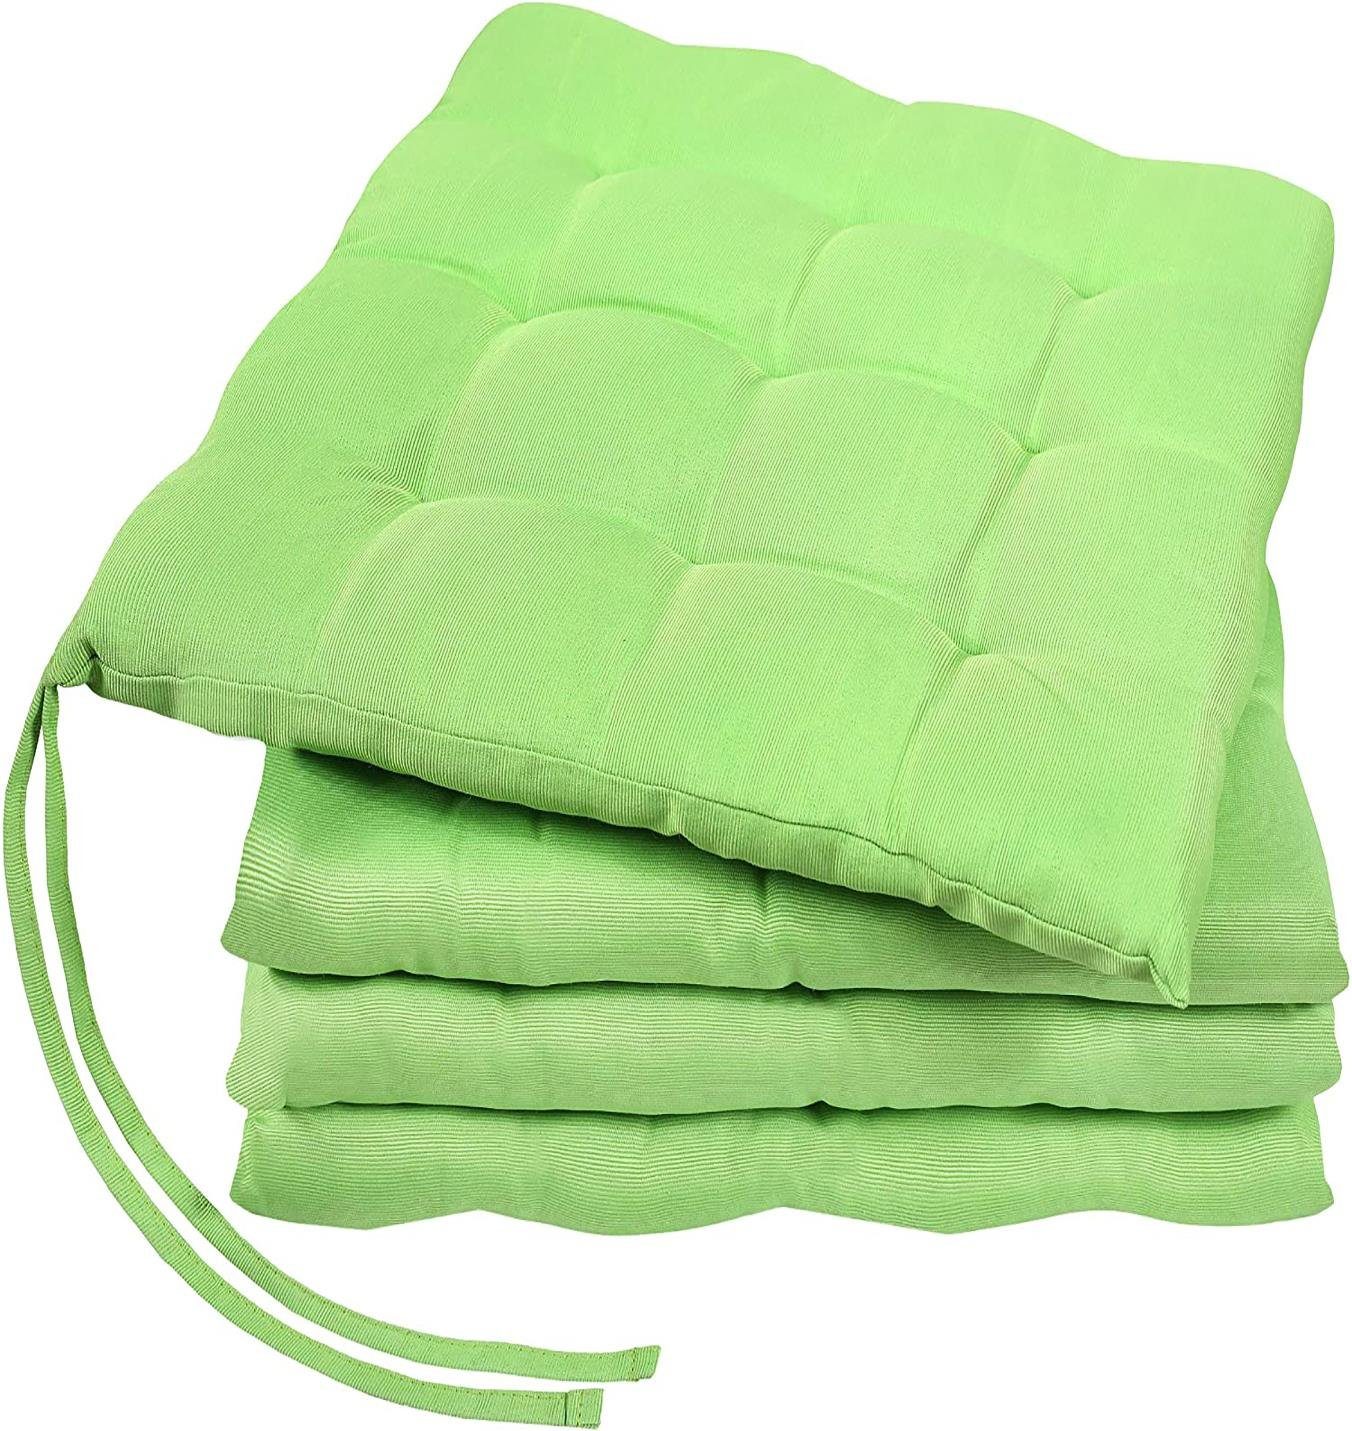 GREEN MARK Textilien Sitzkissen Sitzkissen, Stuhlkissen für Außen oder Innen, weich gefüllt, 40x40cm Apfel grün